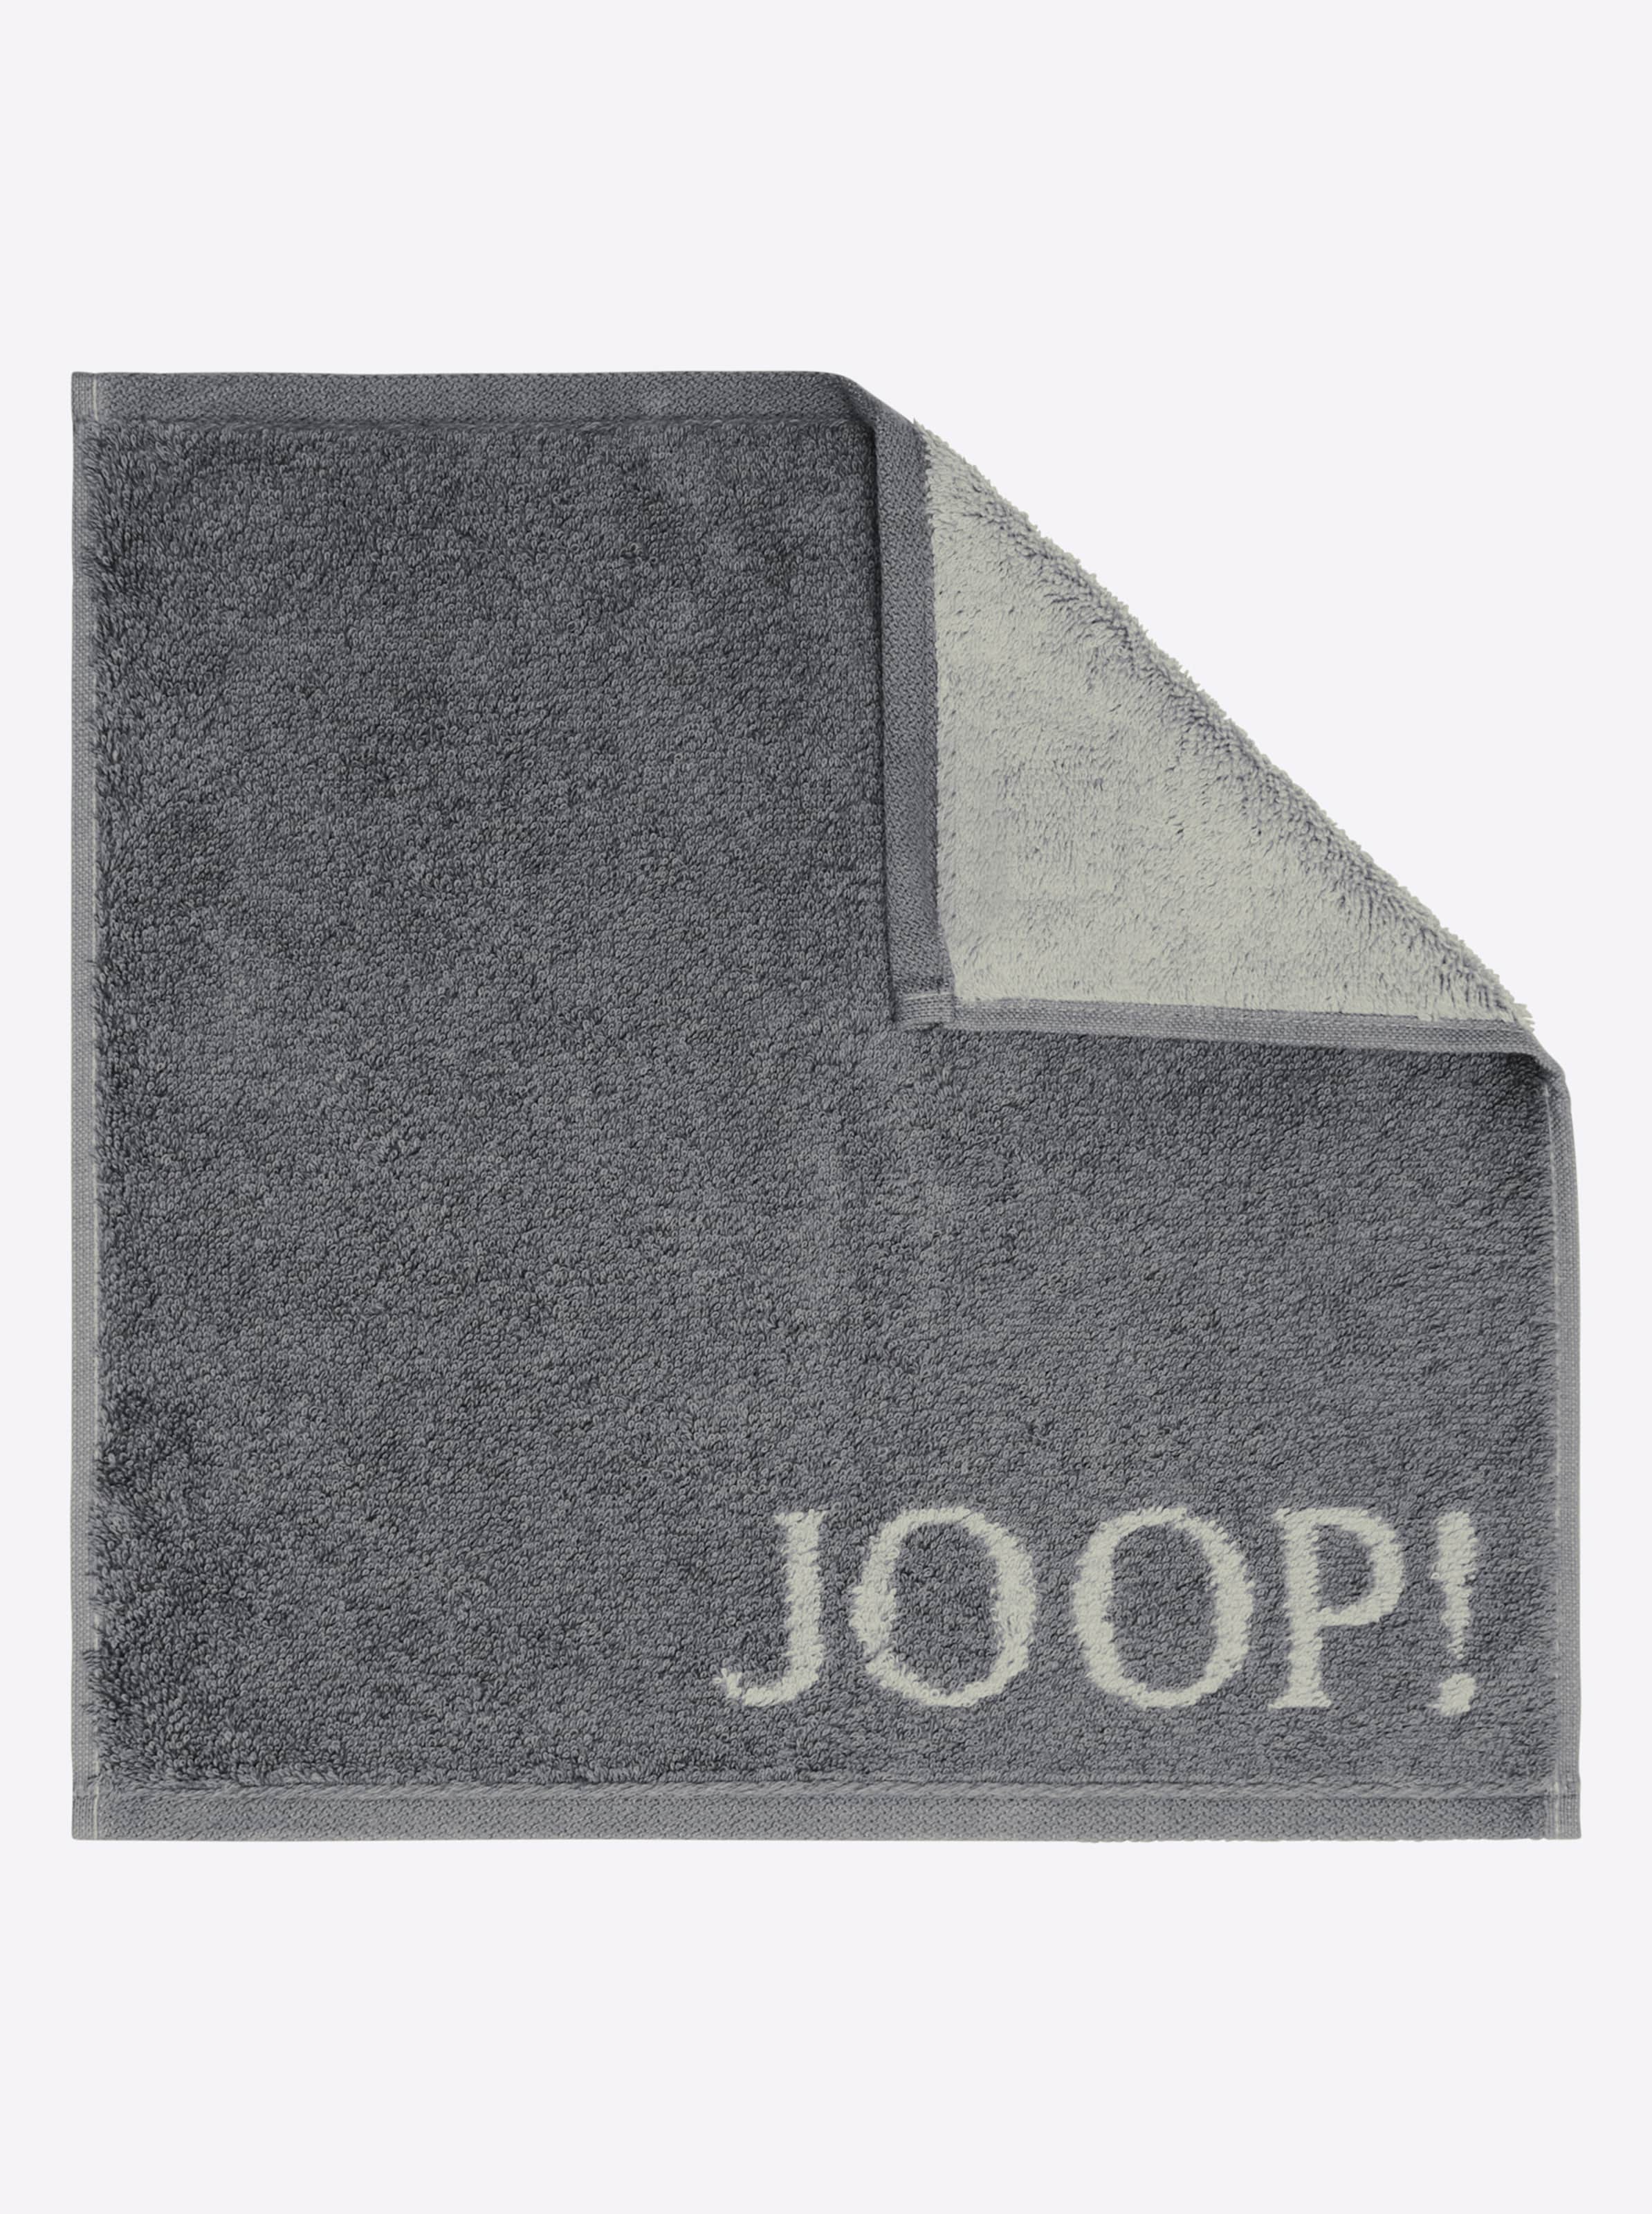 BT Pro günstig Kaufen-Handtuch in anthrazit von JOOP!. Handtuch in anthrazit von JOOP! <![CDATA[Dieses elegante Handtuch-Programm aus dem Hause JOOP! macht Ihr Bad zur luxuriösen Wellness-Oase! Attraktives Hell-Dunkel-Dessin mit eingewebtem JOOP!-Logo. Extra weiche, super fla